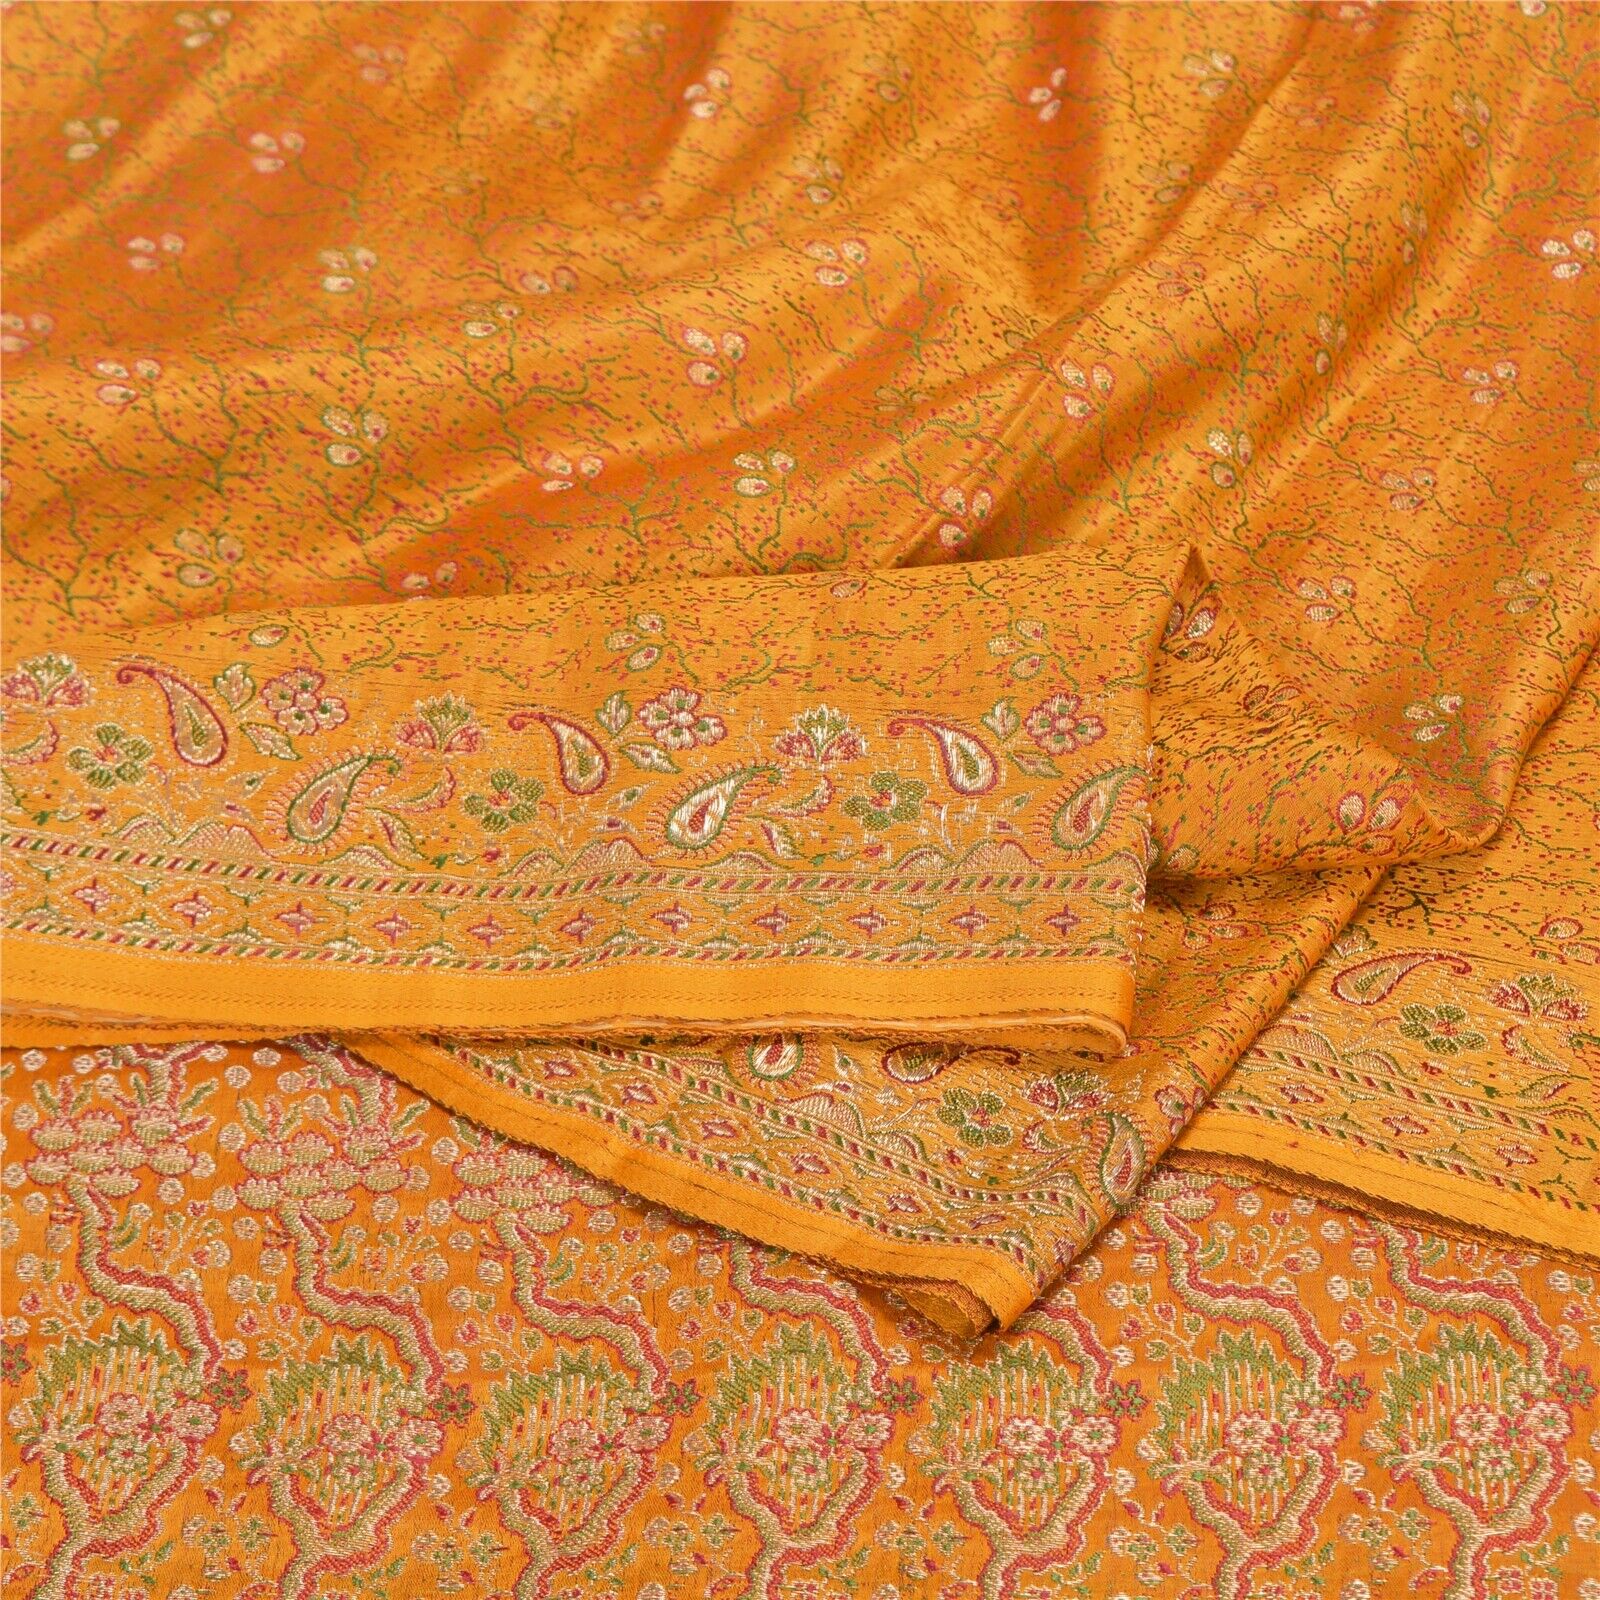 Sanskriti Vintage Yellow Sarees Pure Satin Woven Brocade/Banarasi Sari Fabric